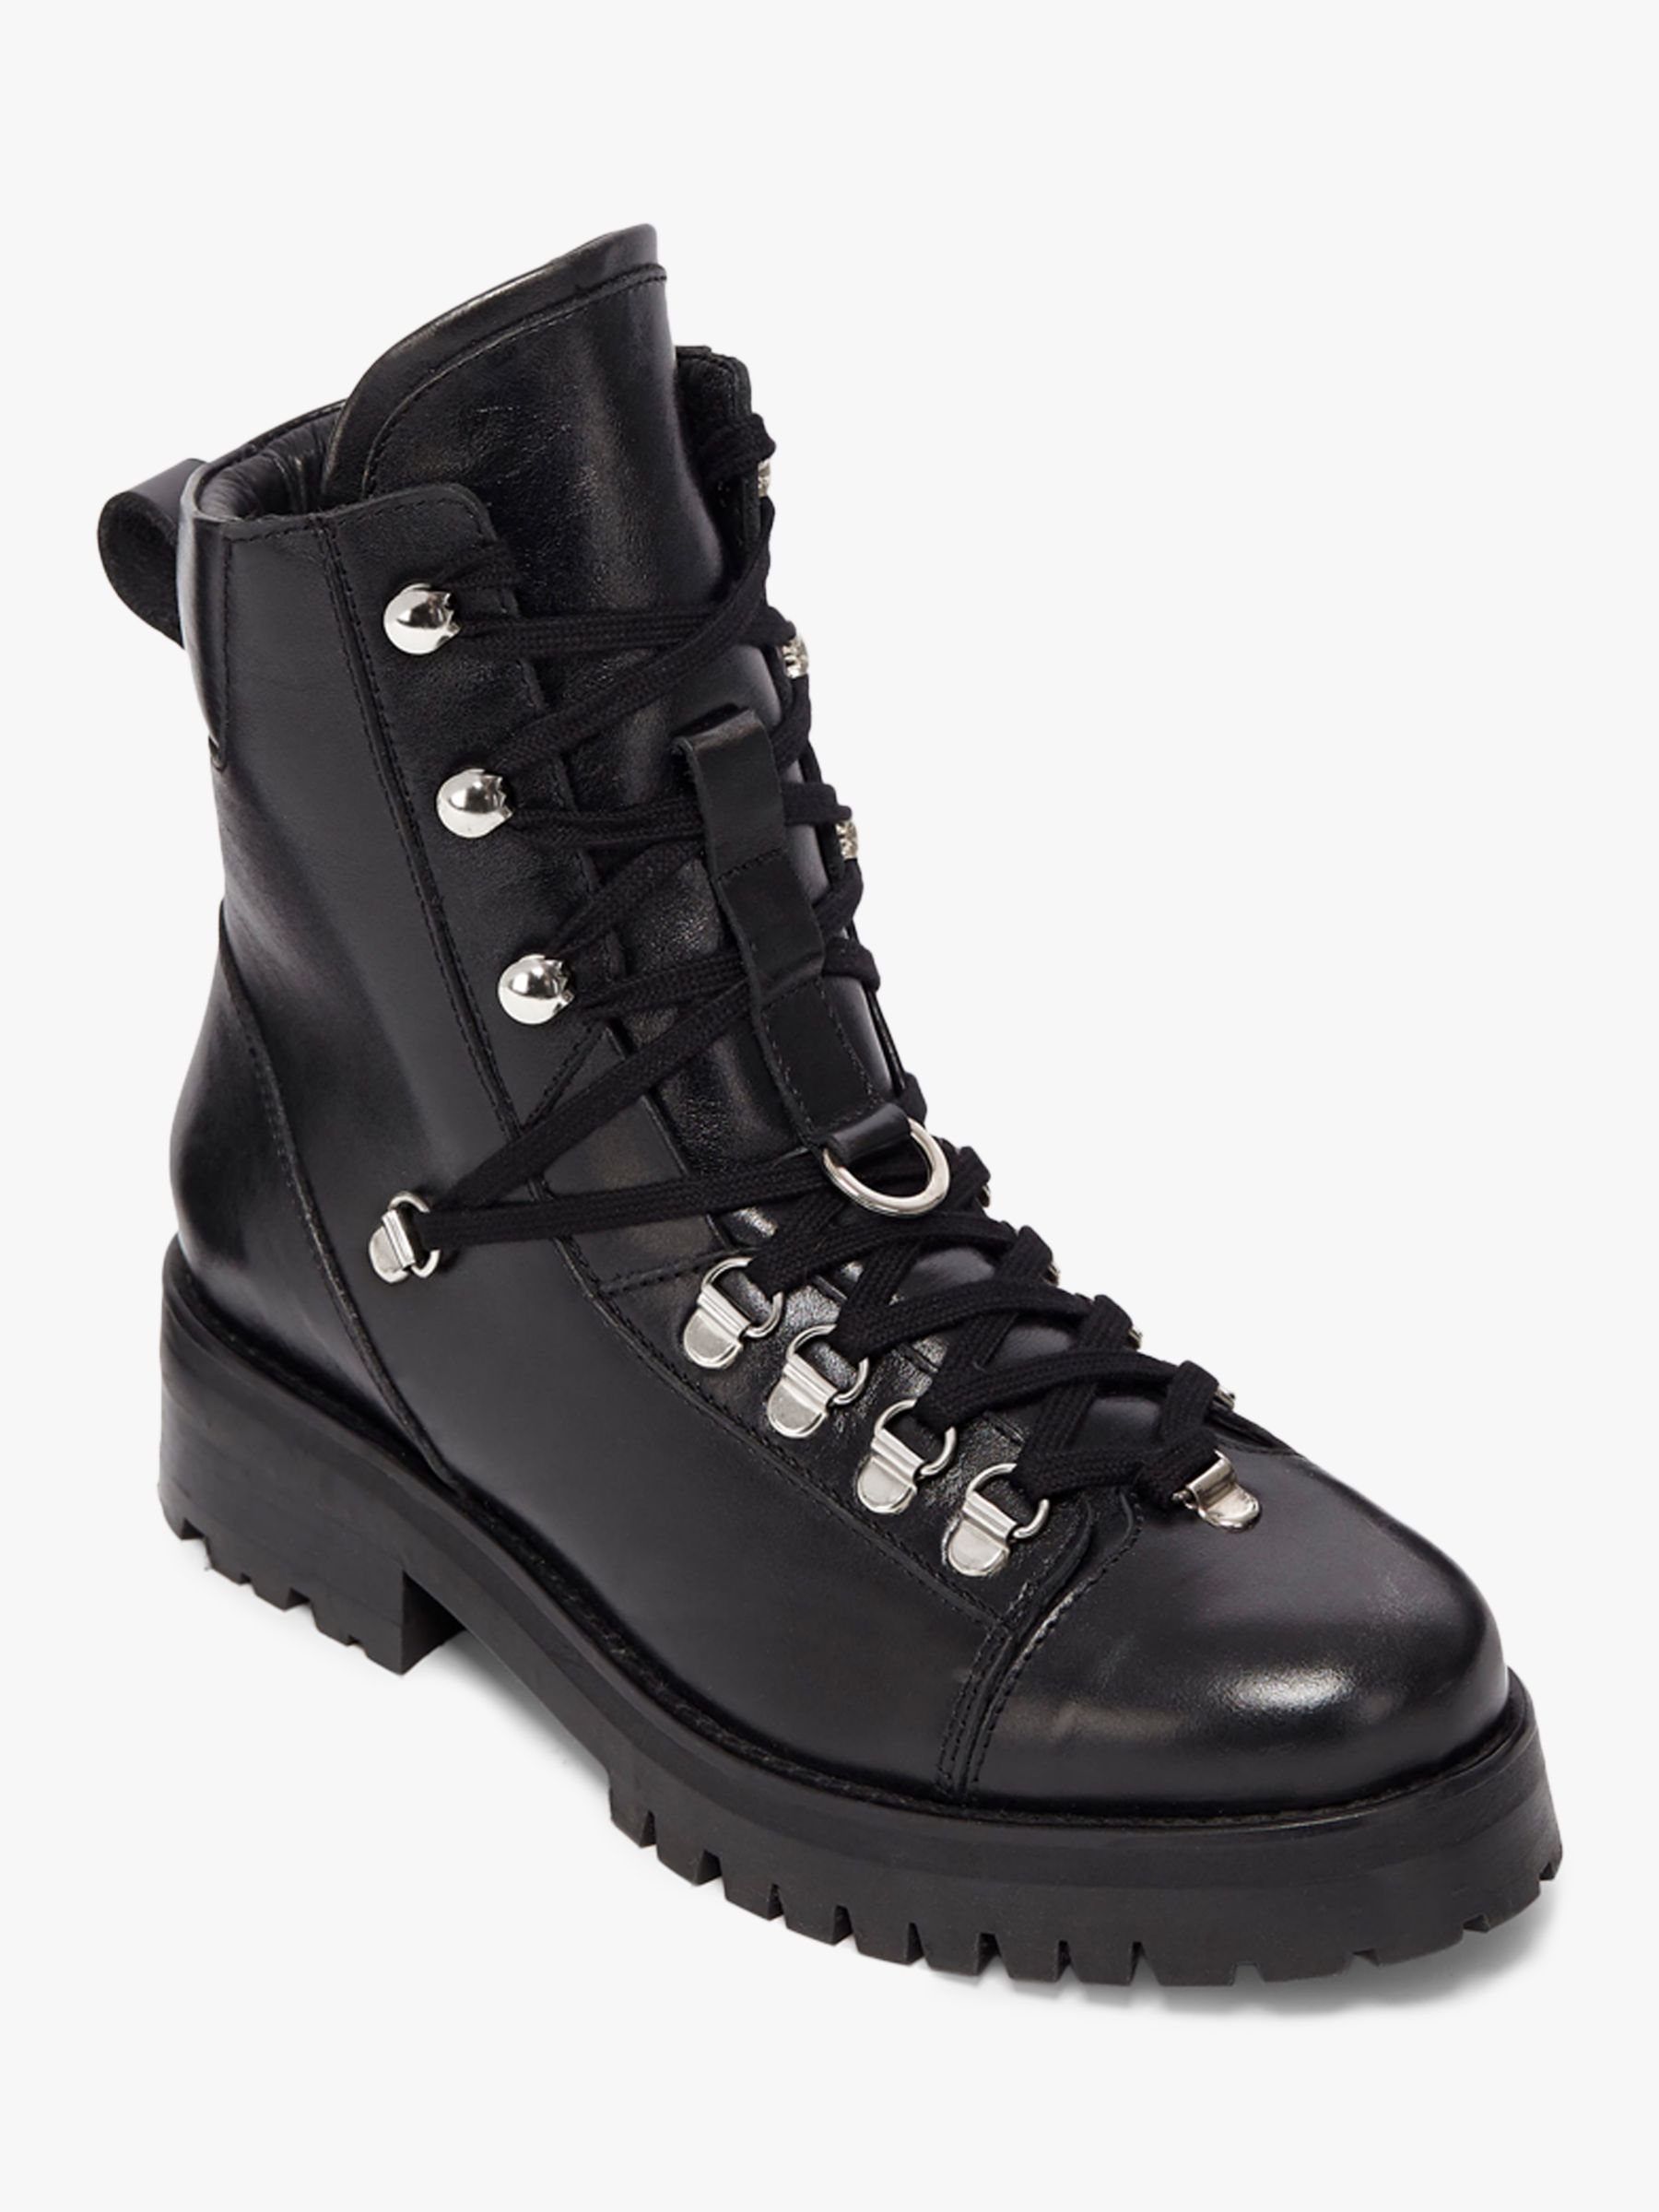 AllSaints Franka Leather Bilker Boots, Black